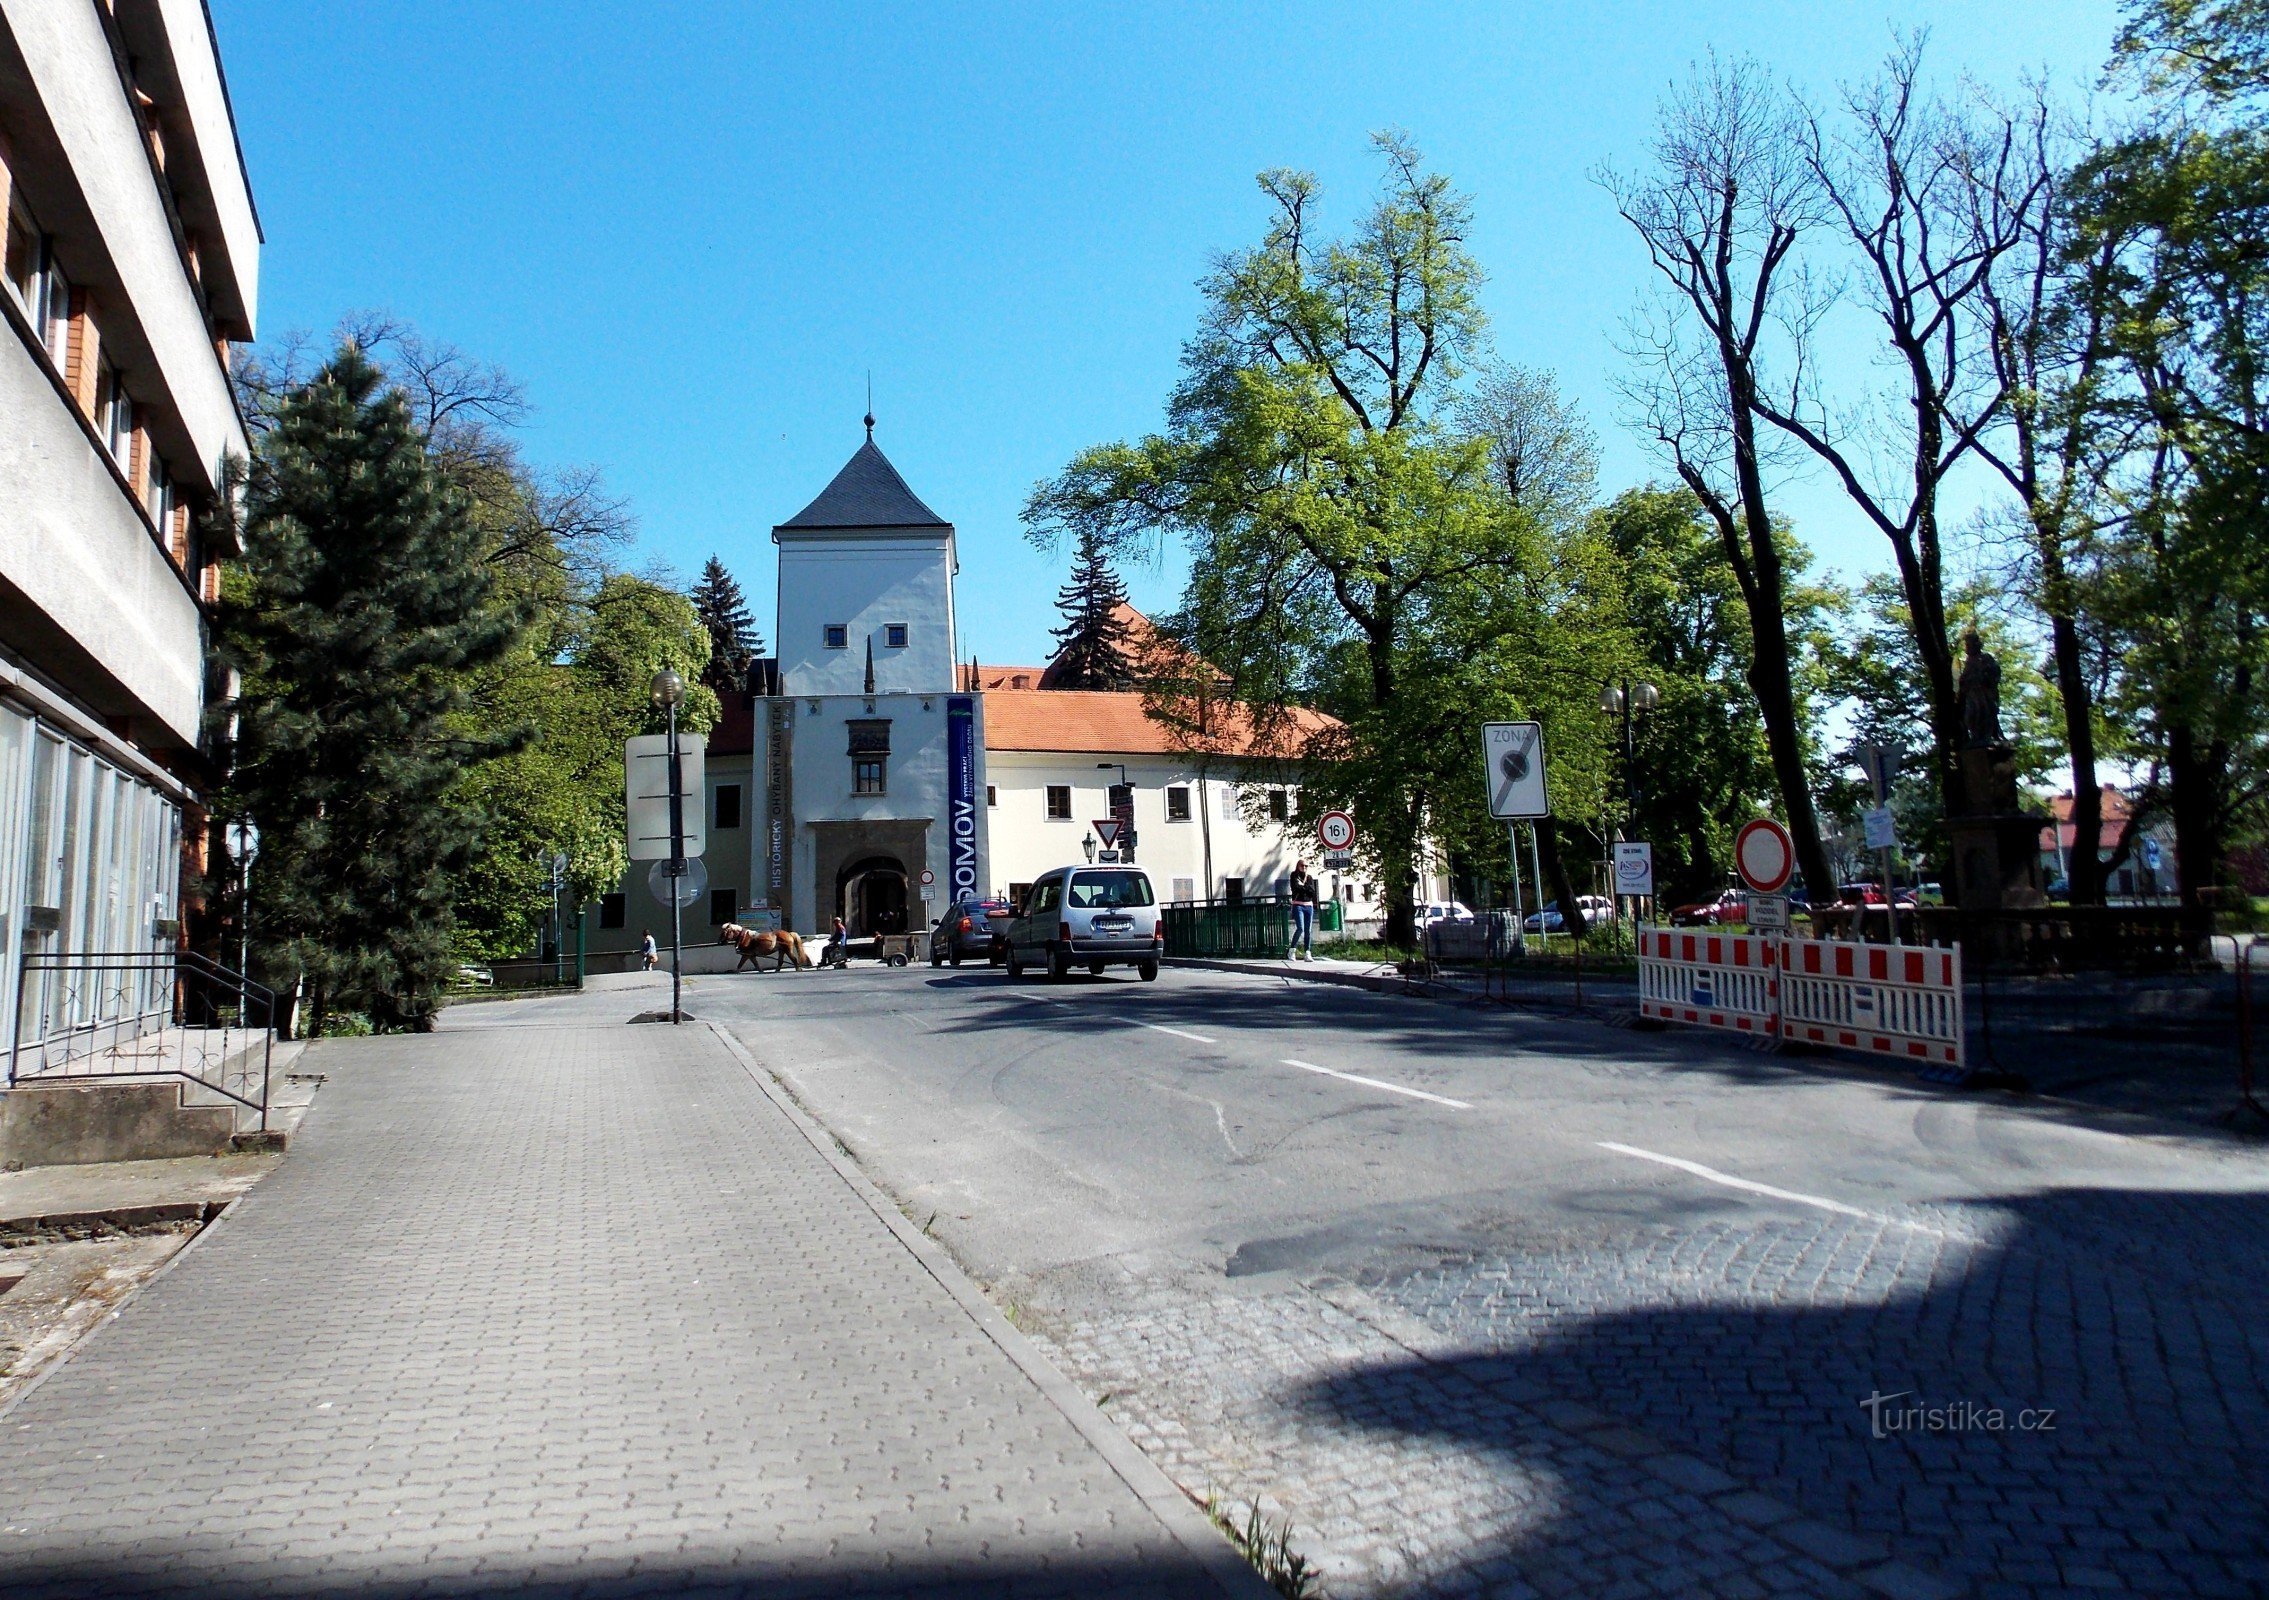 Atrás dos pontos turísticos e atrações em Bystřice pod Hostýnem